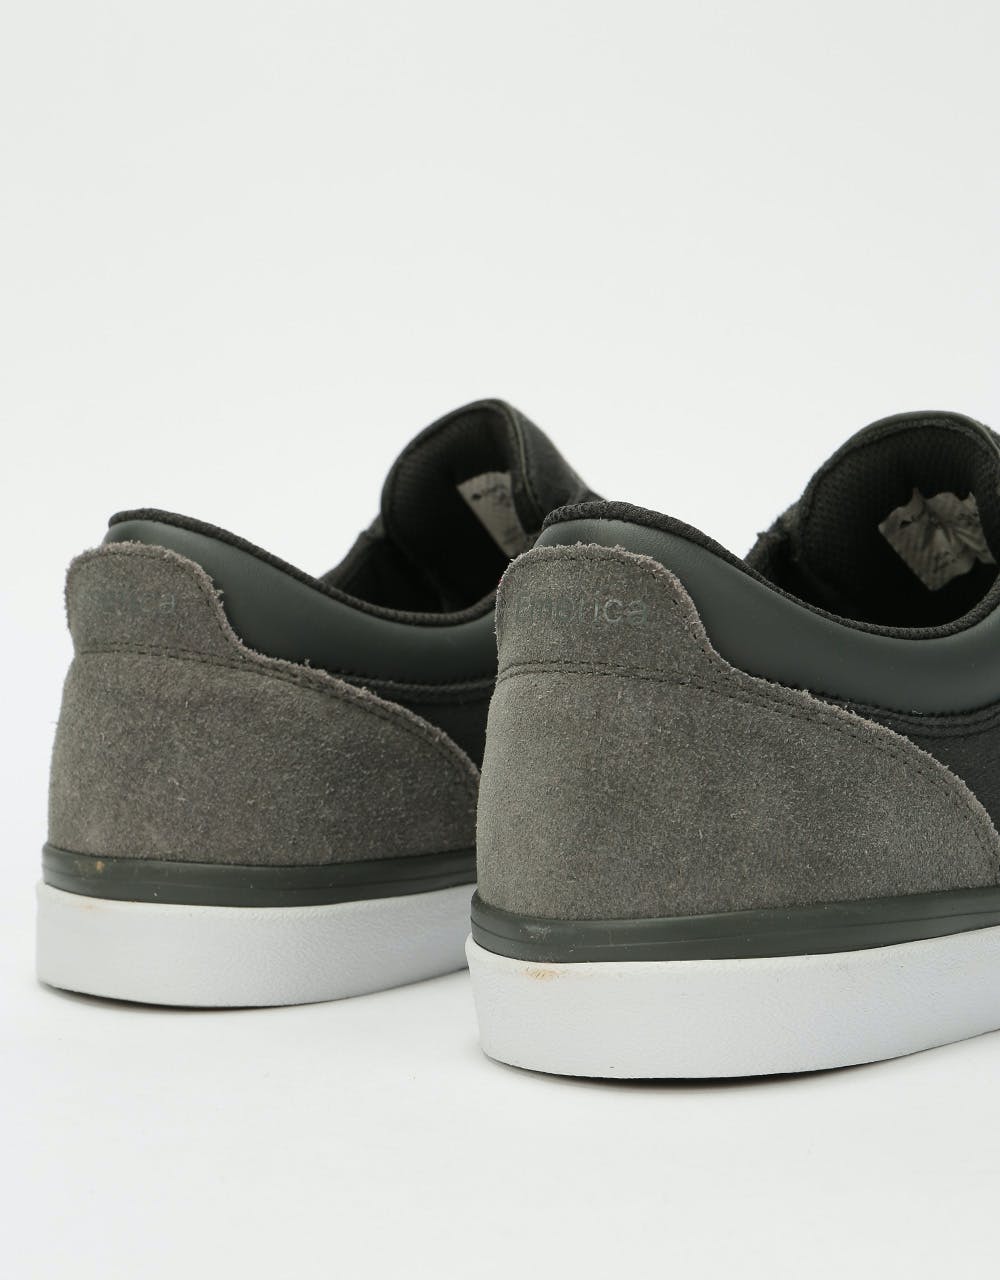 Emerica Alcove Skate Shoes - Grey/Grey